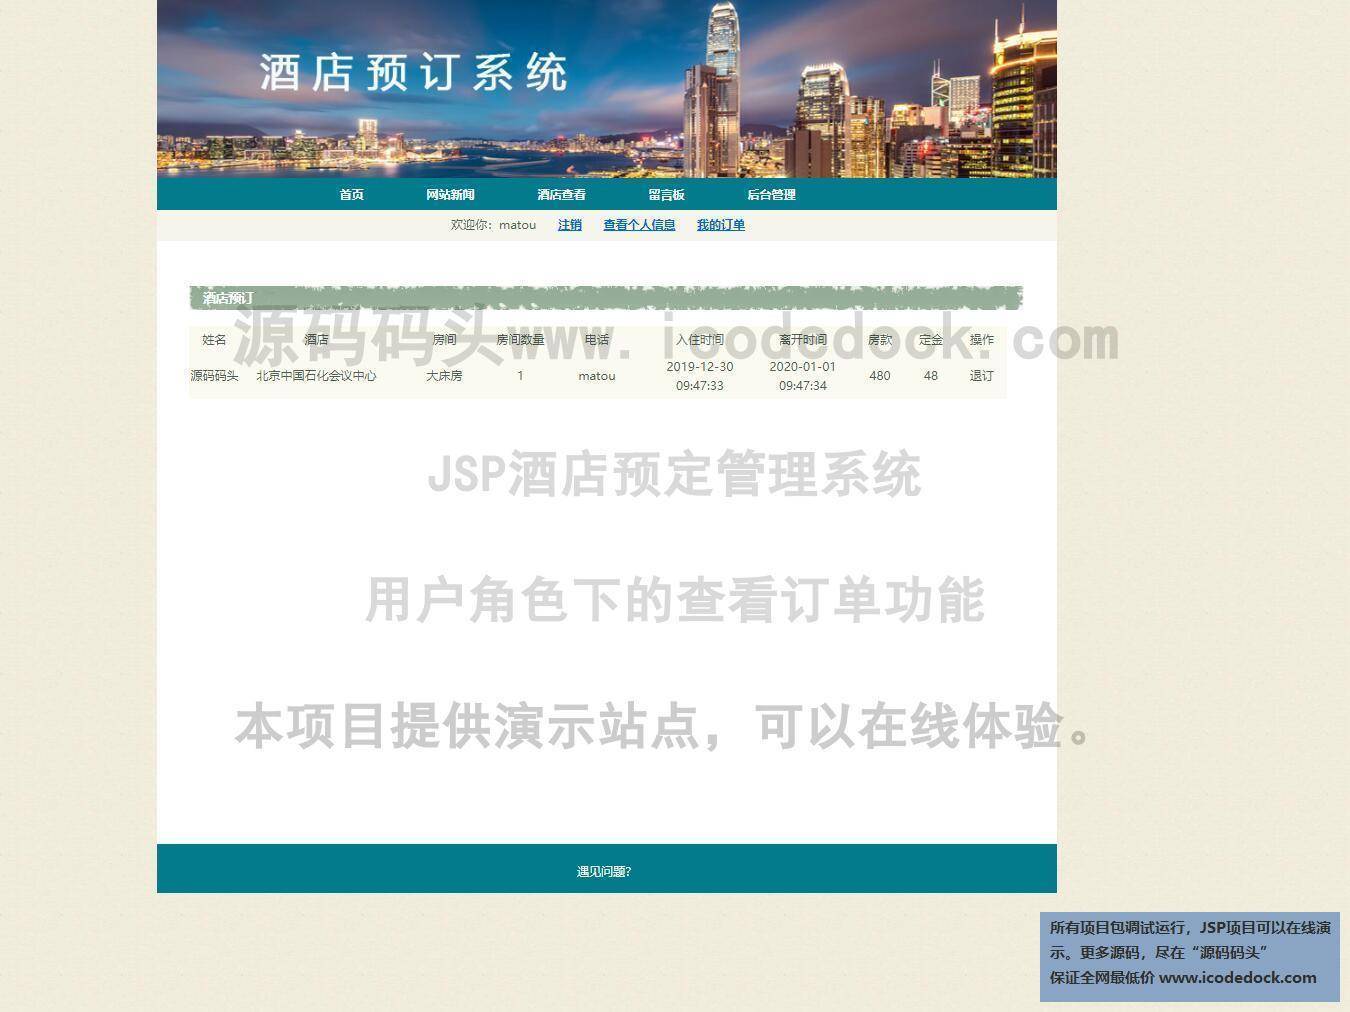 源码码头-JSP酒店预定管理系统-用户角色-查看订单